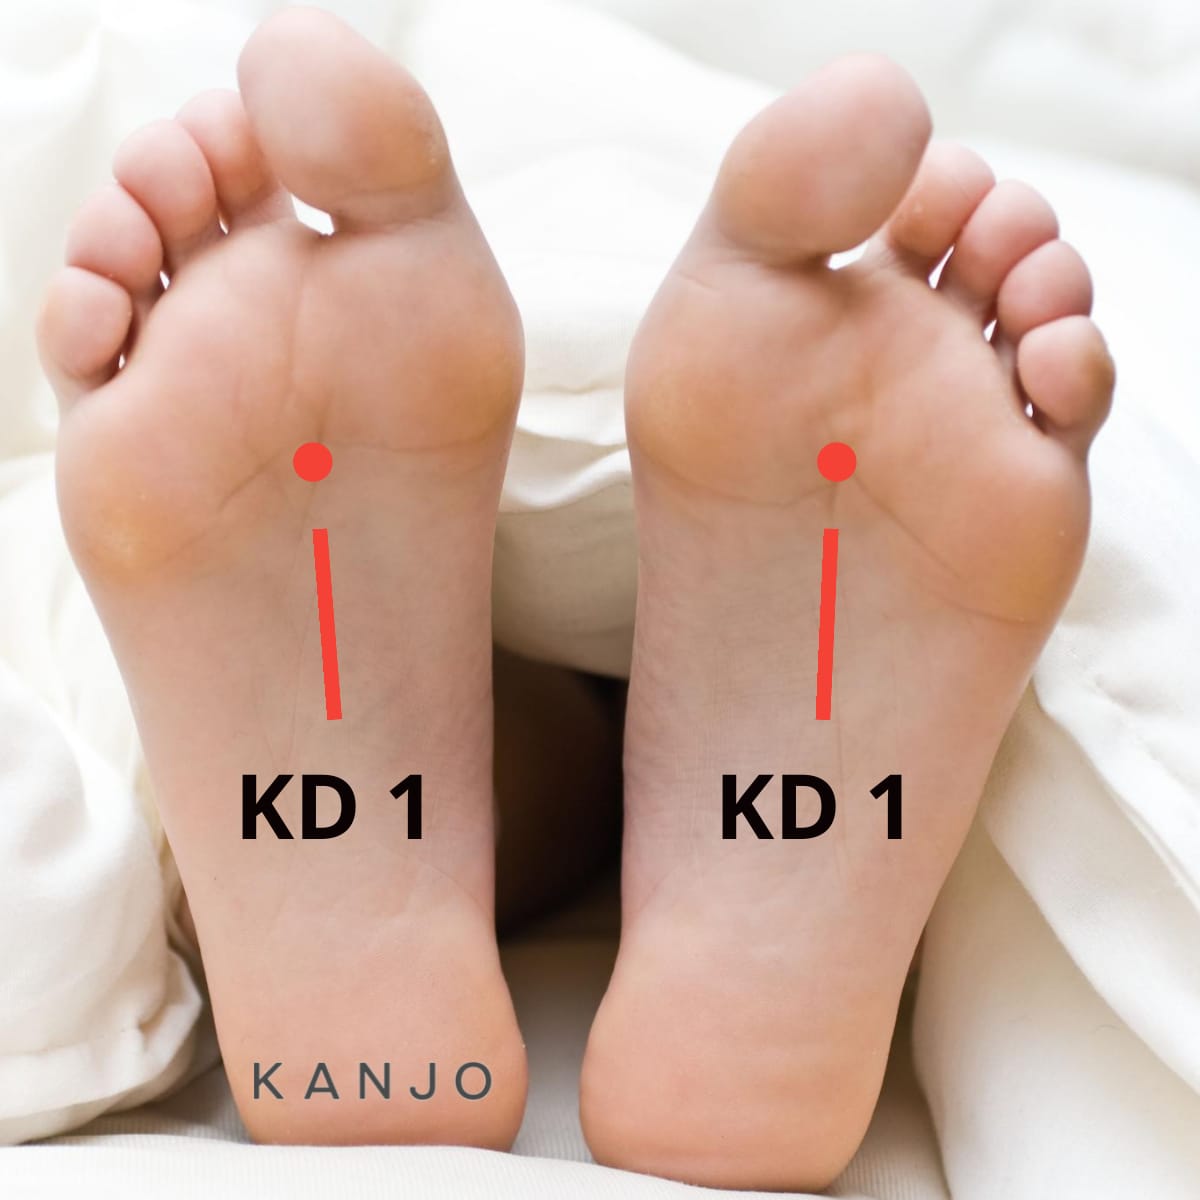 Kidney 1 (KD 1) - Yongquan or Gushing Spring